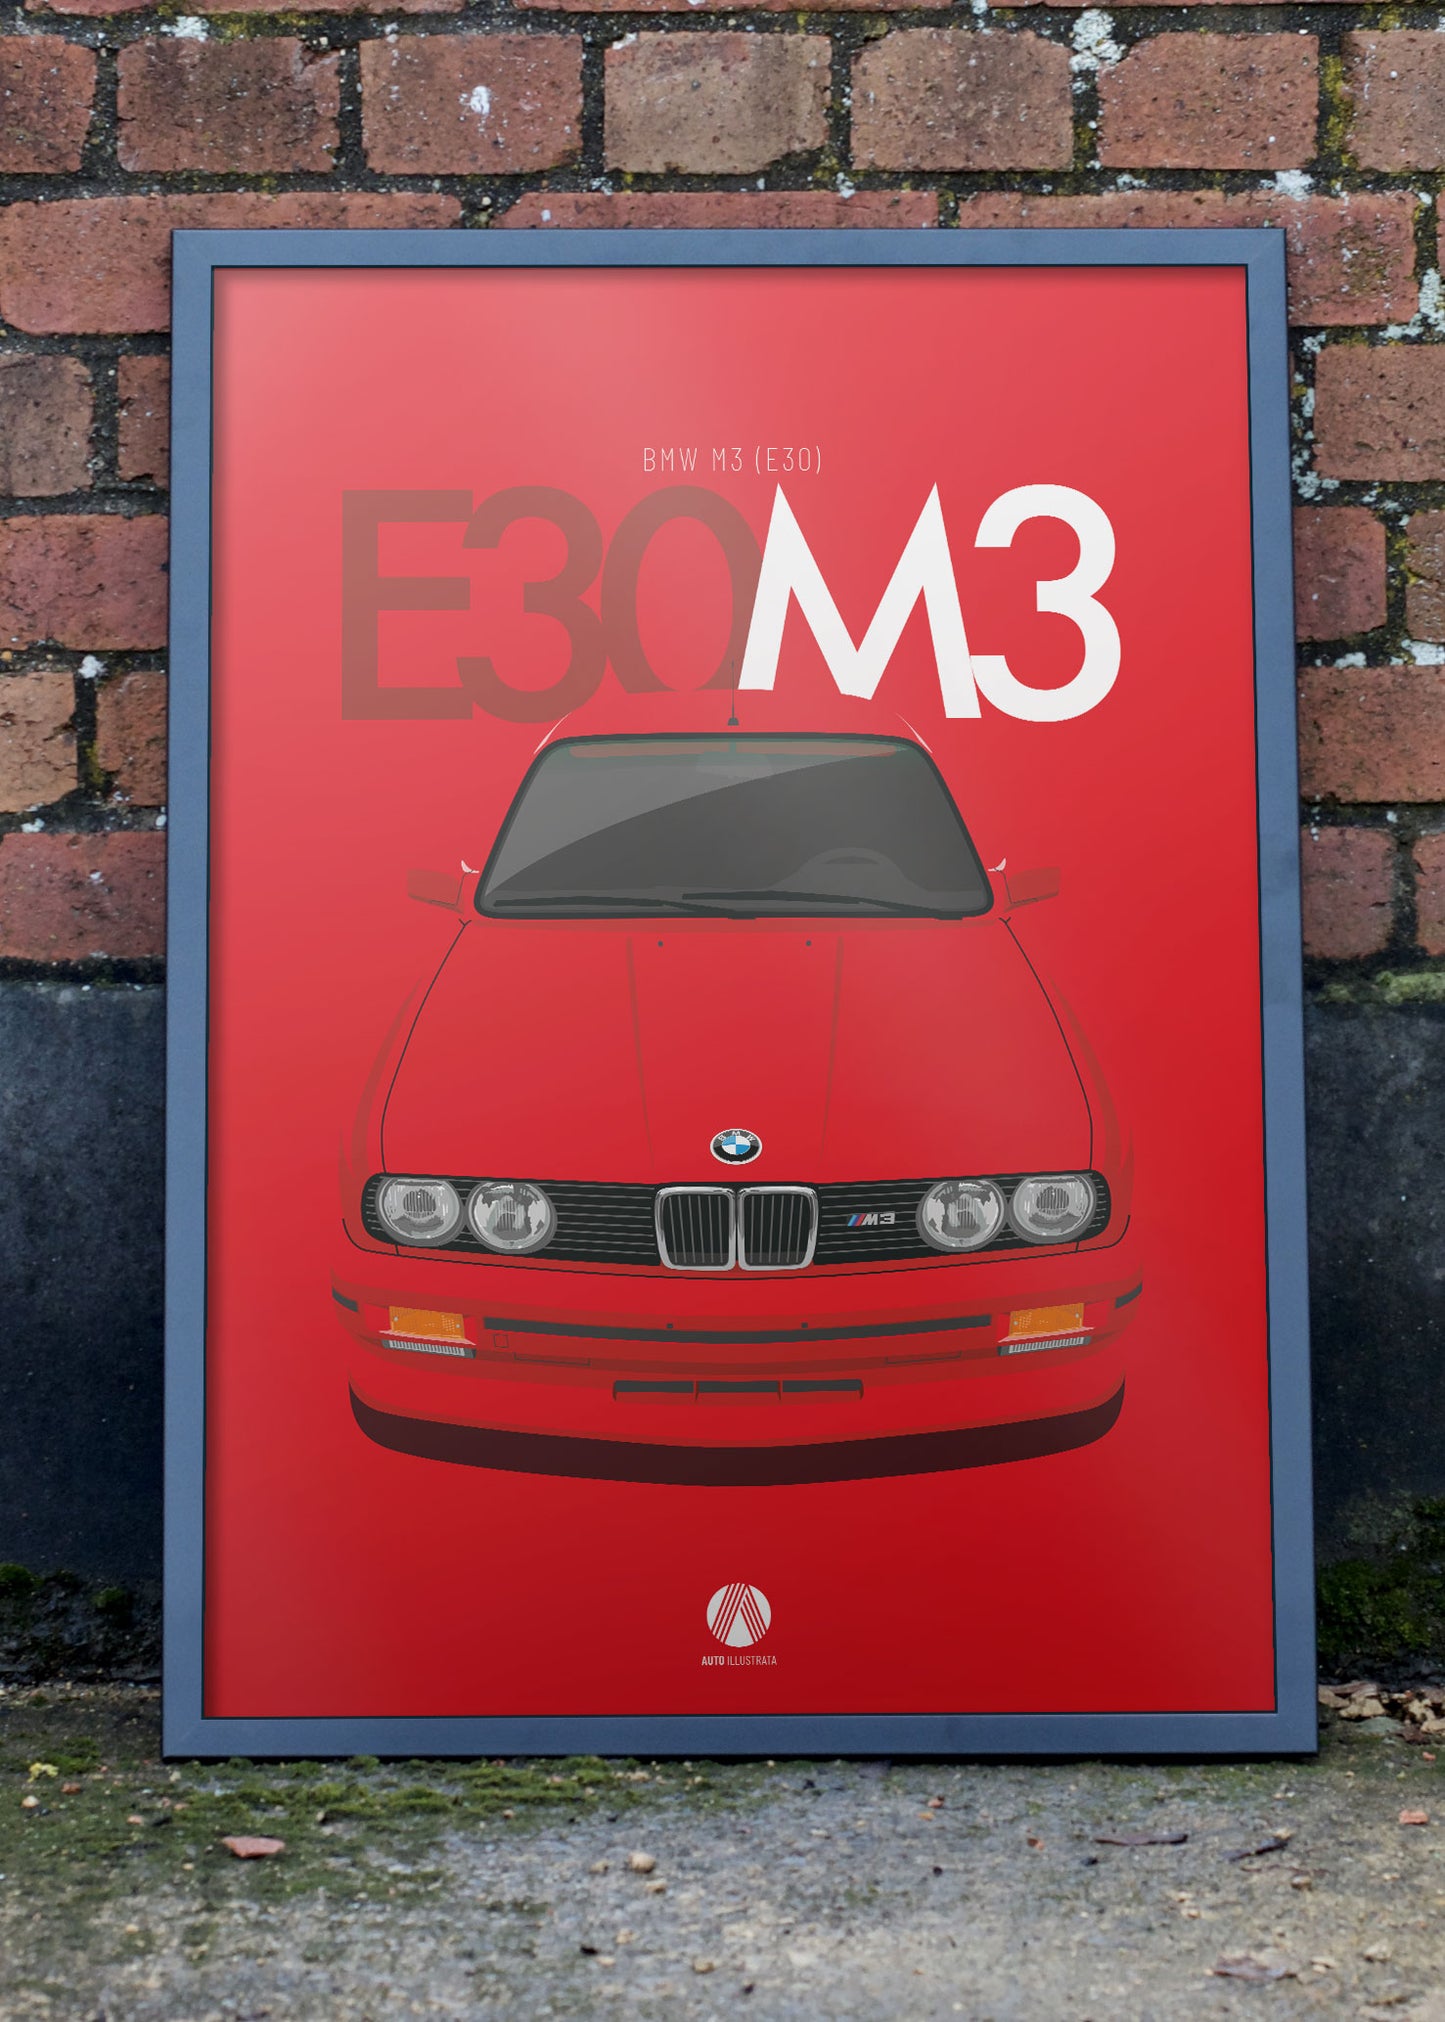 1990 BMW E30 M3 Brilliant Red 308 - poster print